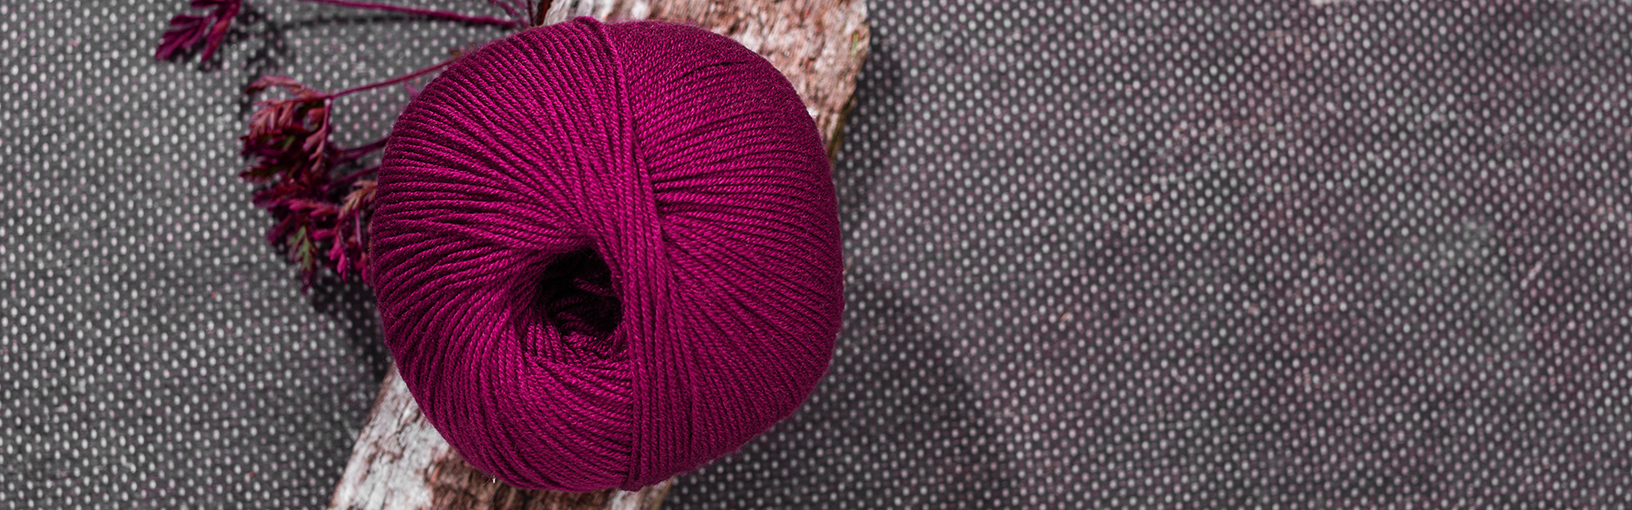 Hilos de alta calidad para tejer, crochet y fieltro Hilos Lana Grossa | Estilo campestre